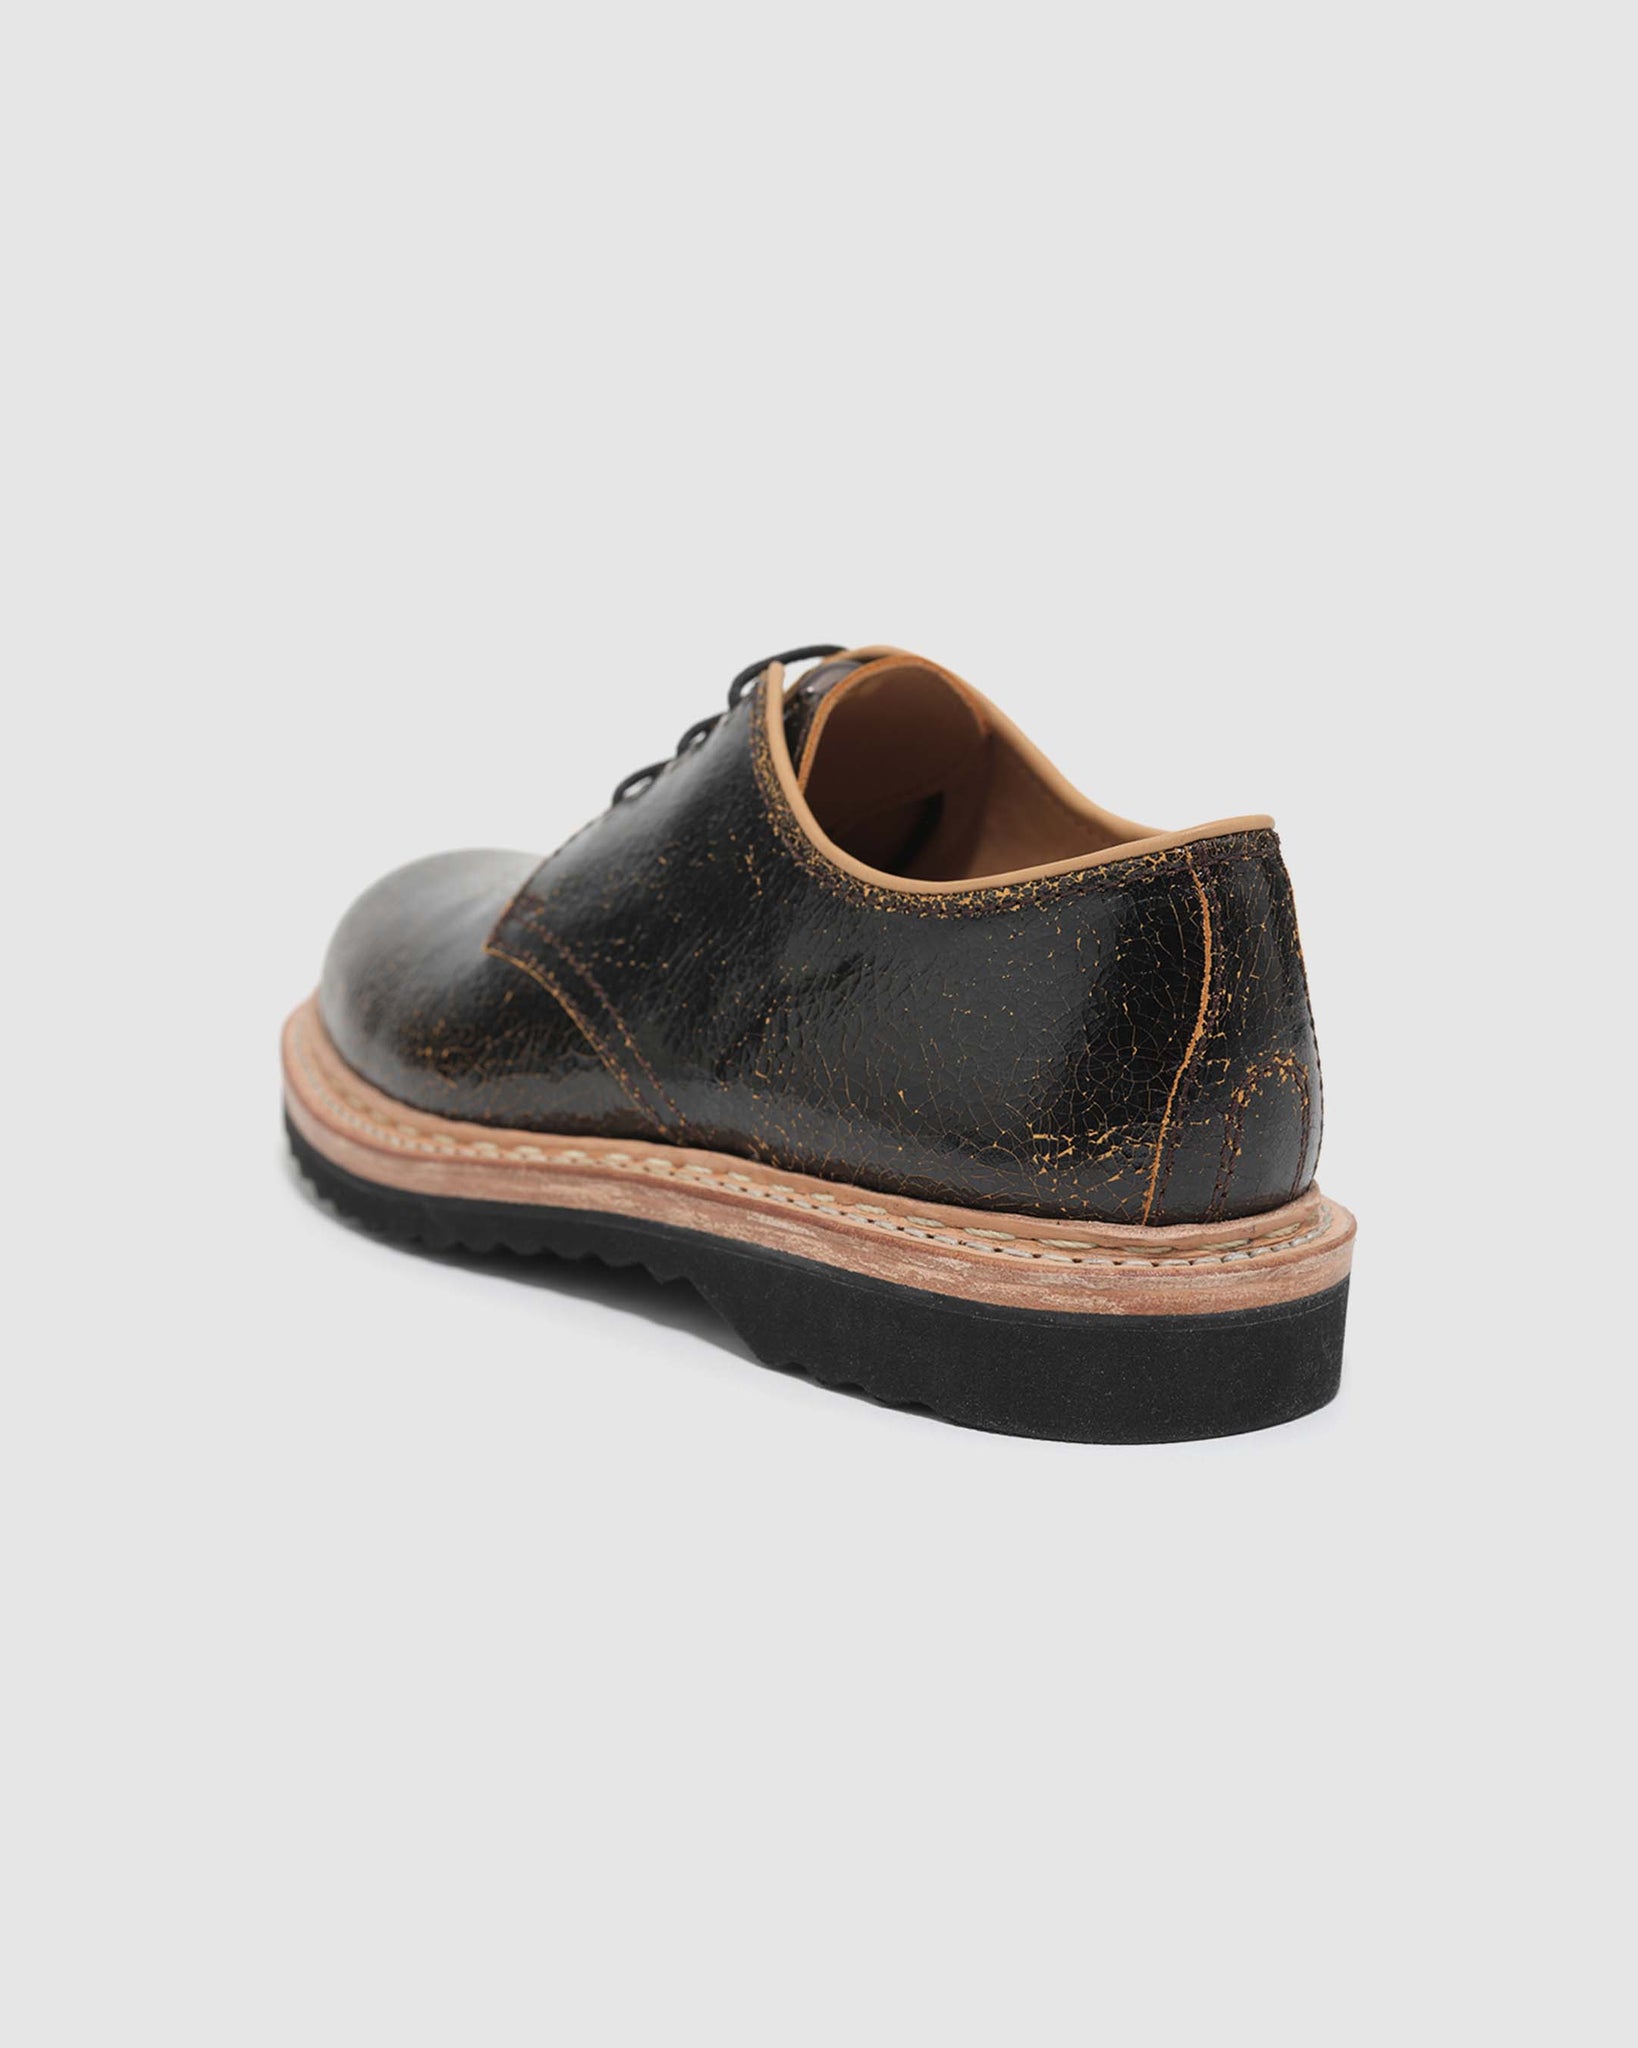 Trampler Shoe - Fractured Black Leather